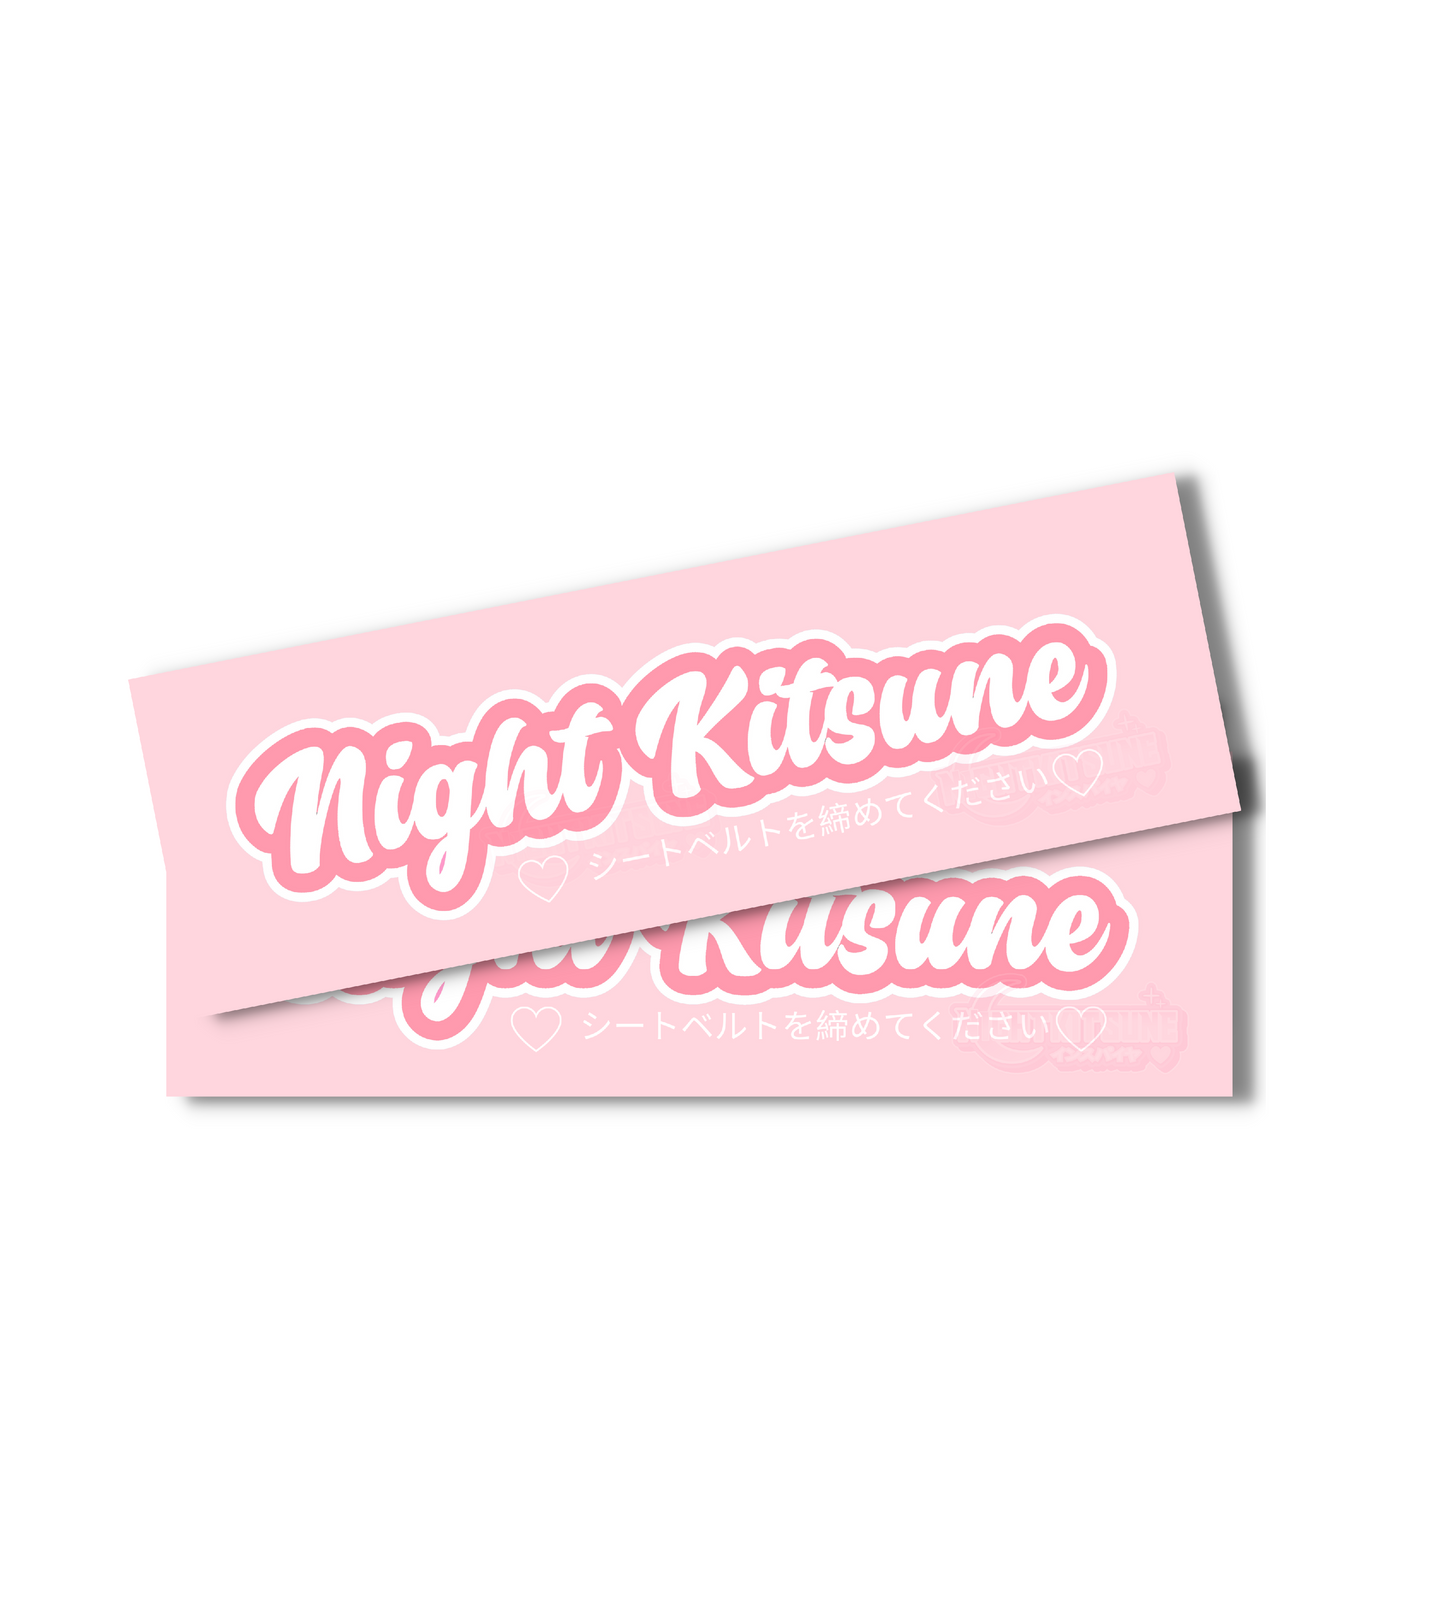 Nightkitsune Logo  - Slap Sticker